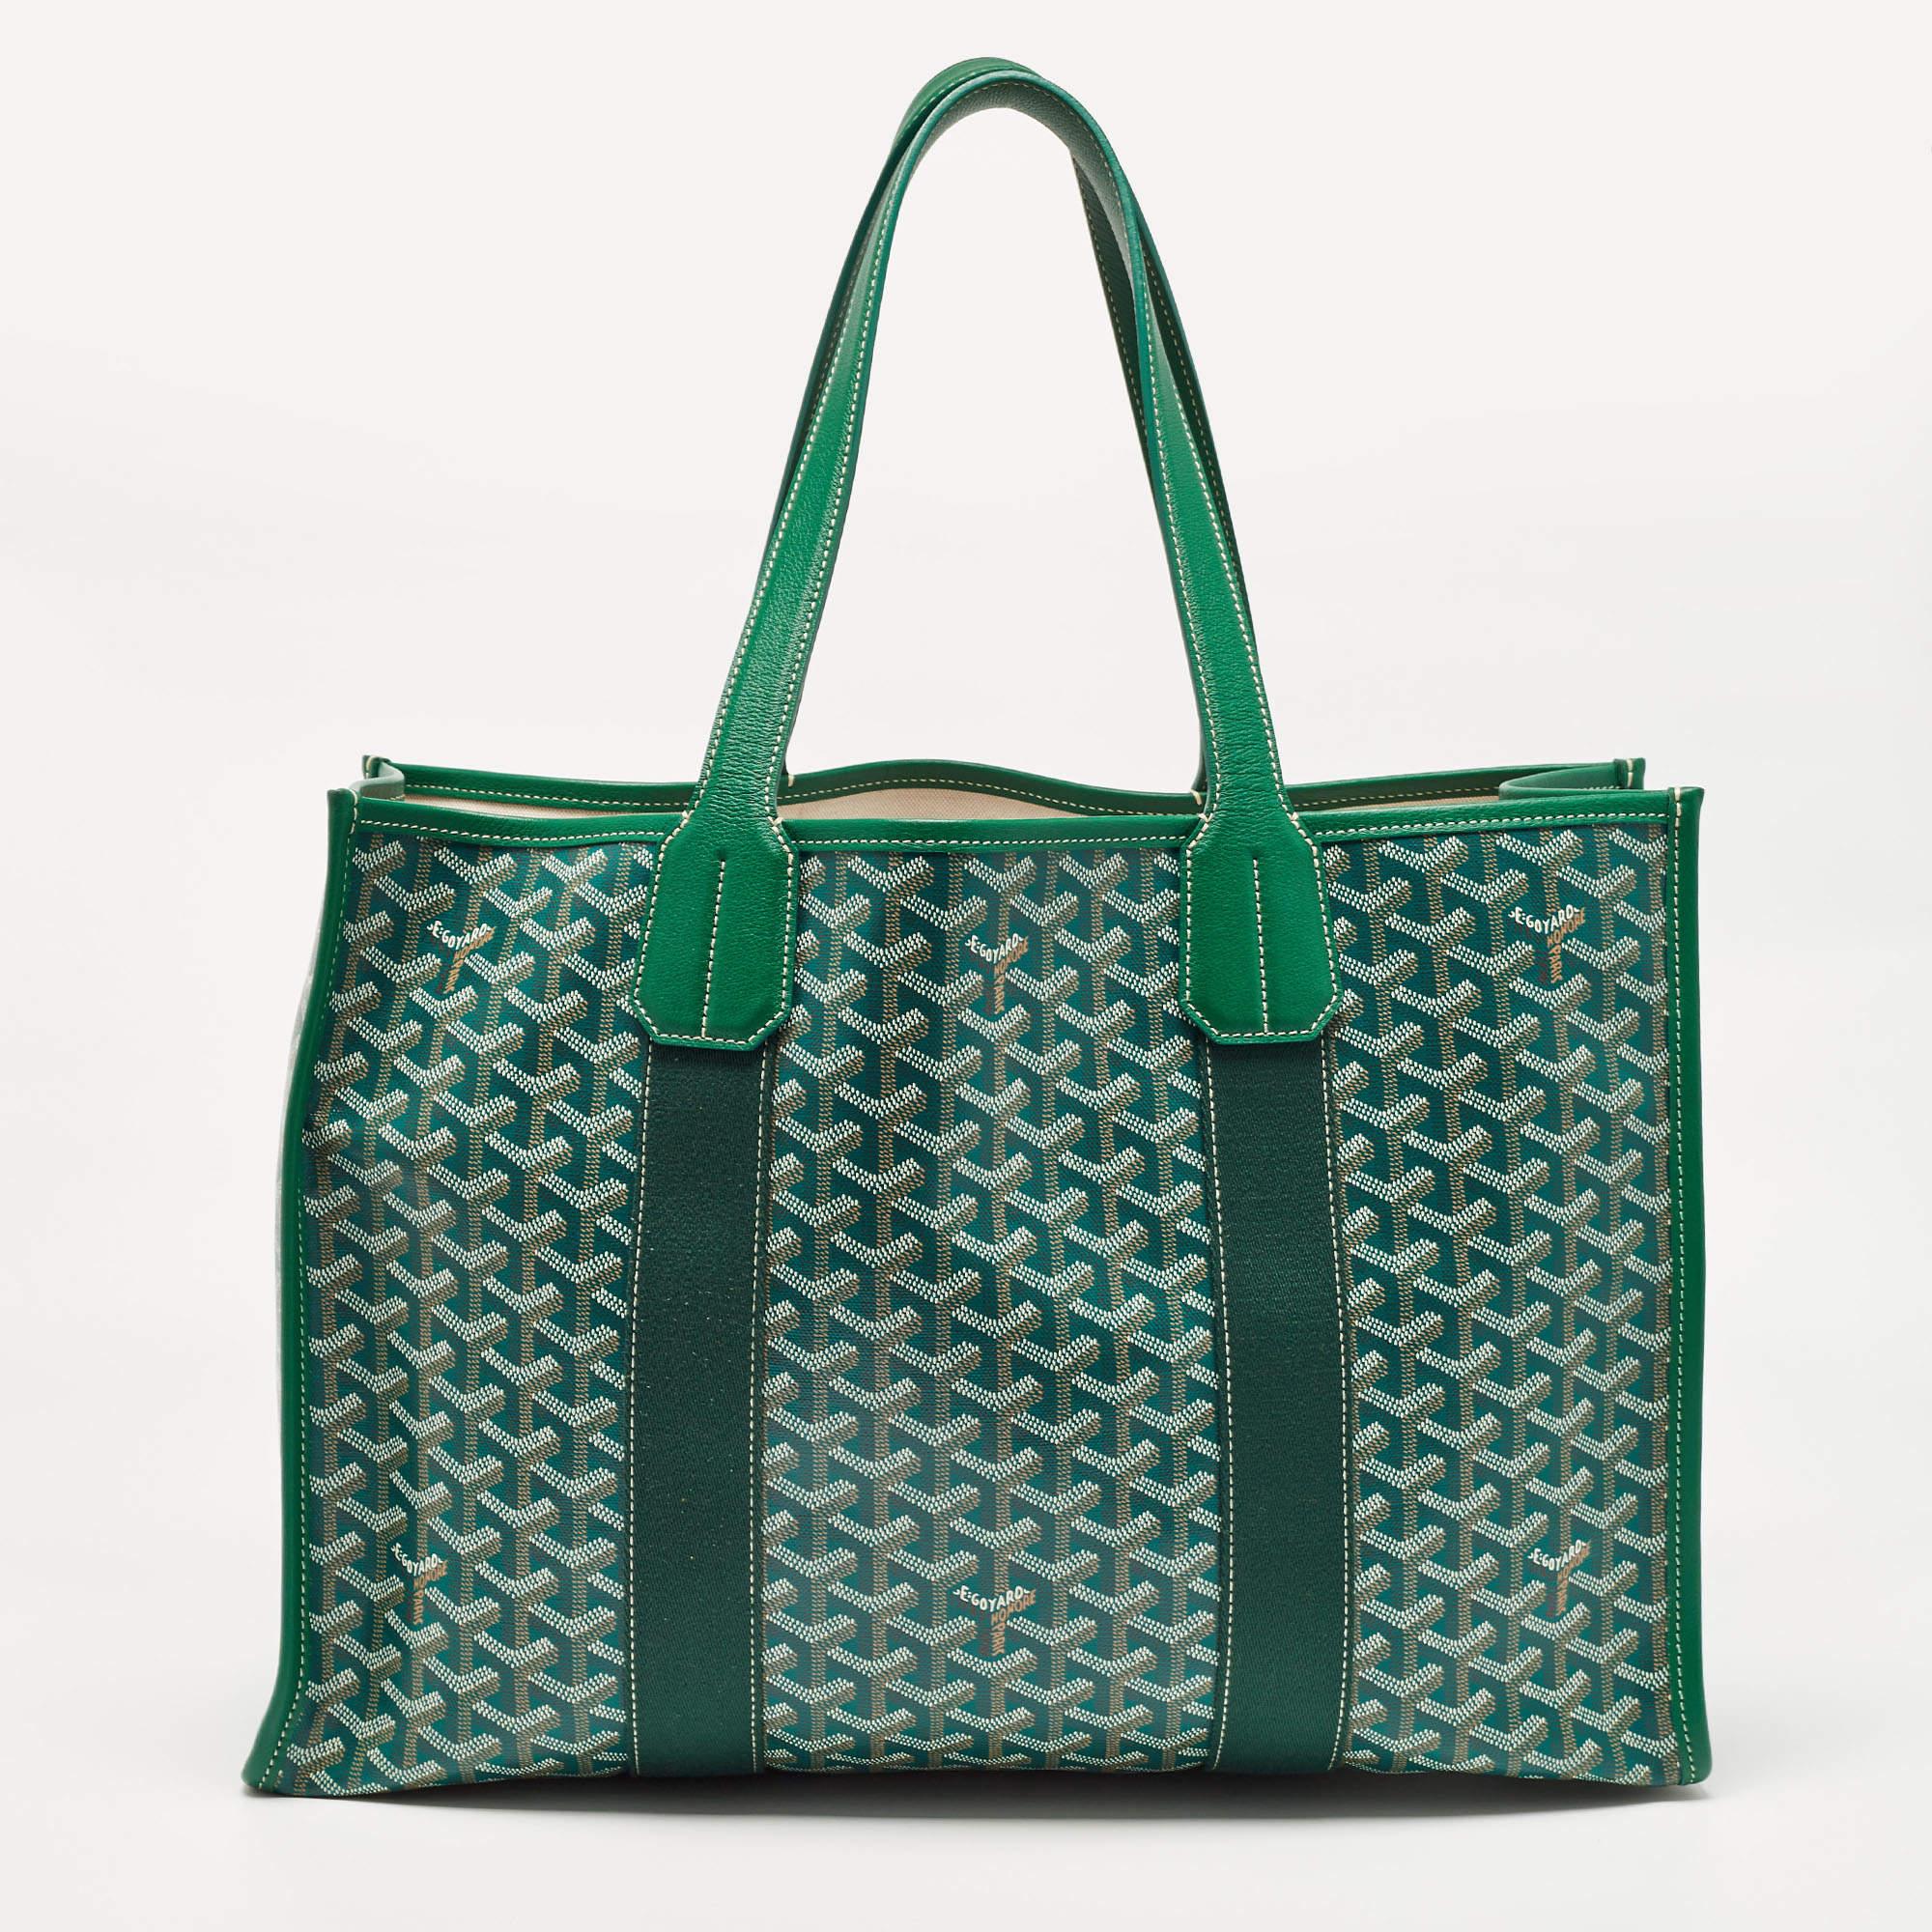 Le cabas Goyard Villette est un sac à main de luxe exquis. Sa toile Goyardine d'un vert éclatant est complétée par de fines touches de cuir. Ce fourre-tout spacieux est un accessoire élégant et fonctionnel pour un usage quotidien.

Comprend : Sac à